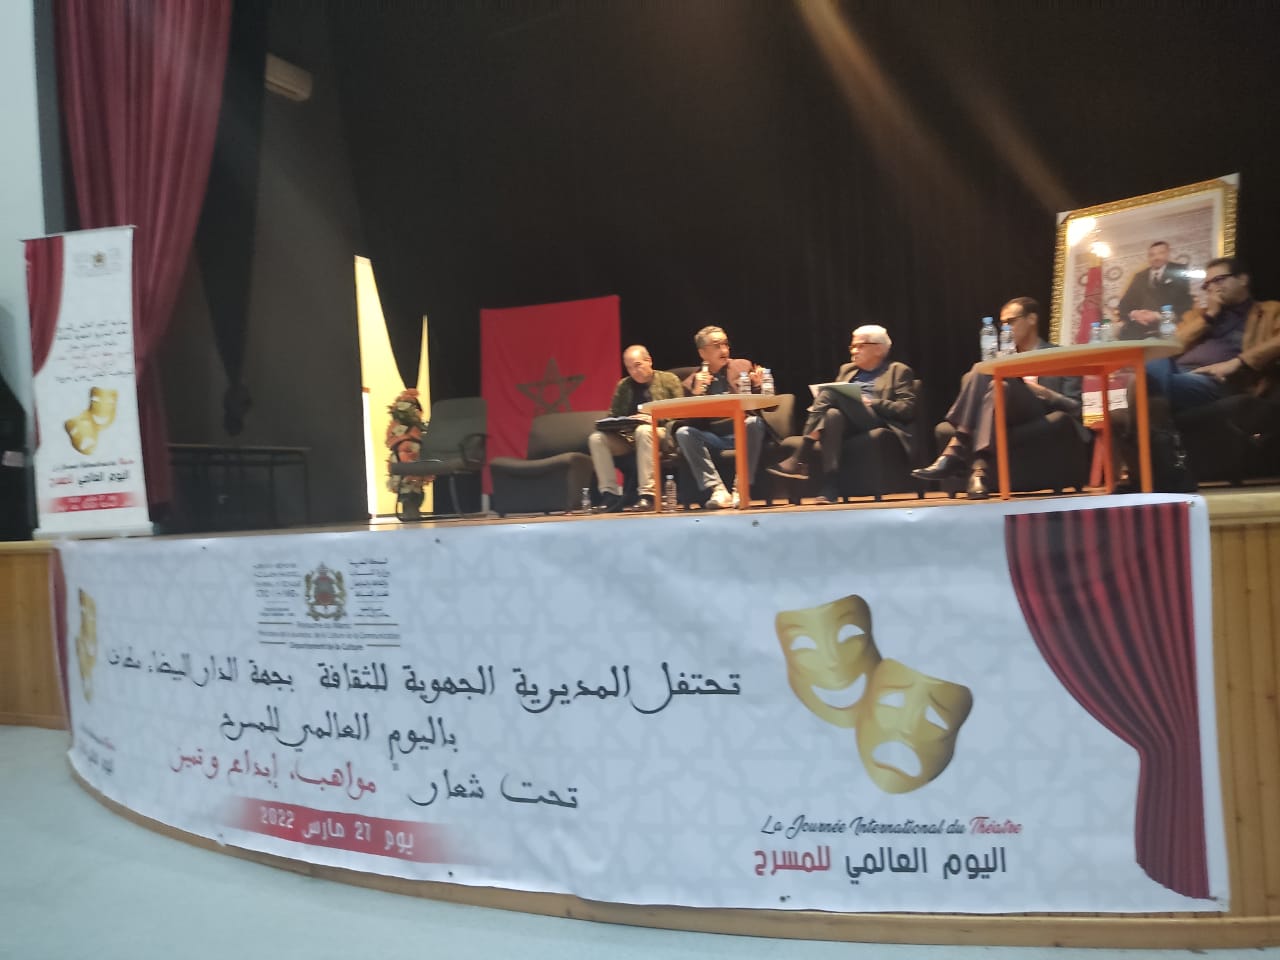 المديرية الجهوية للثقافة بجهة الدار البيضاء سطات تحتفل باليوم العالمي للمسرح بطريقتها الخاصة